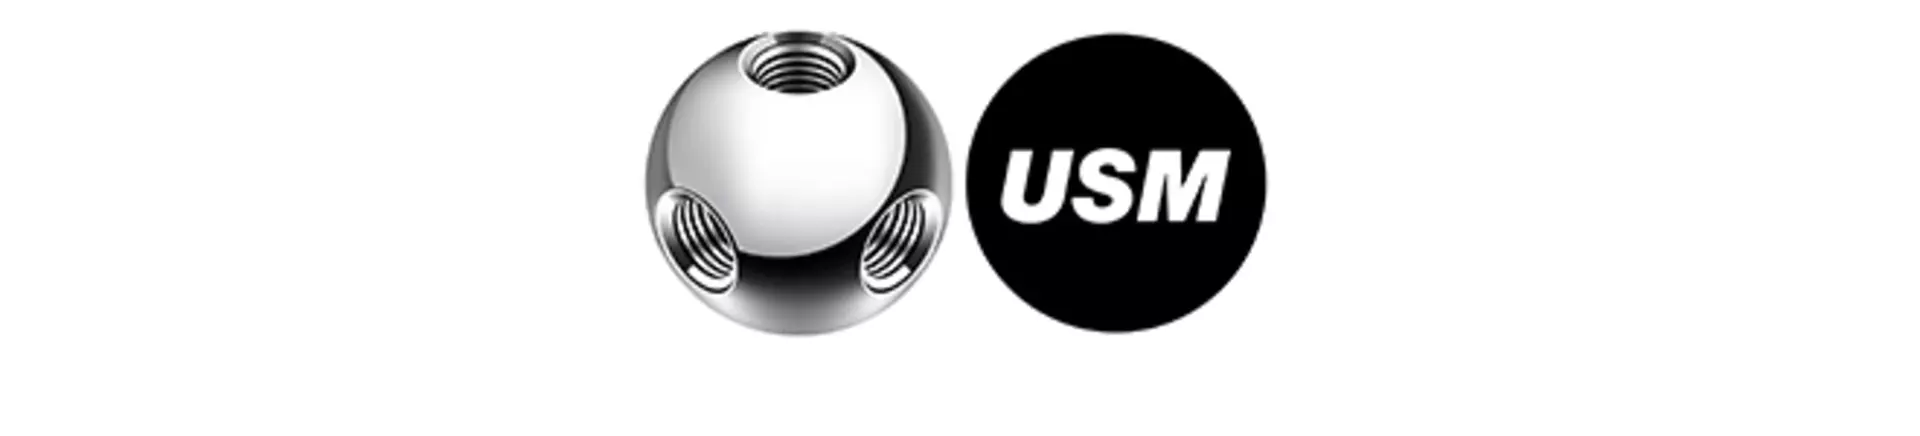 Logo der Premiummarke USM - modulare, konfigurierbare Designmöbel aus Metall. Jetzt bei interni by inhofer entdecken